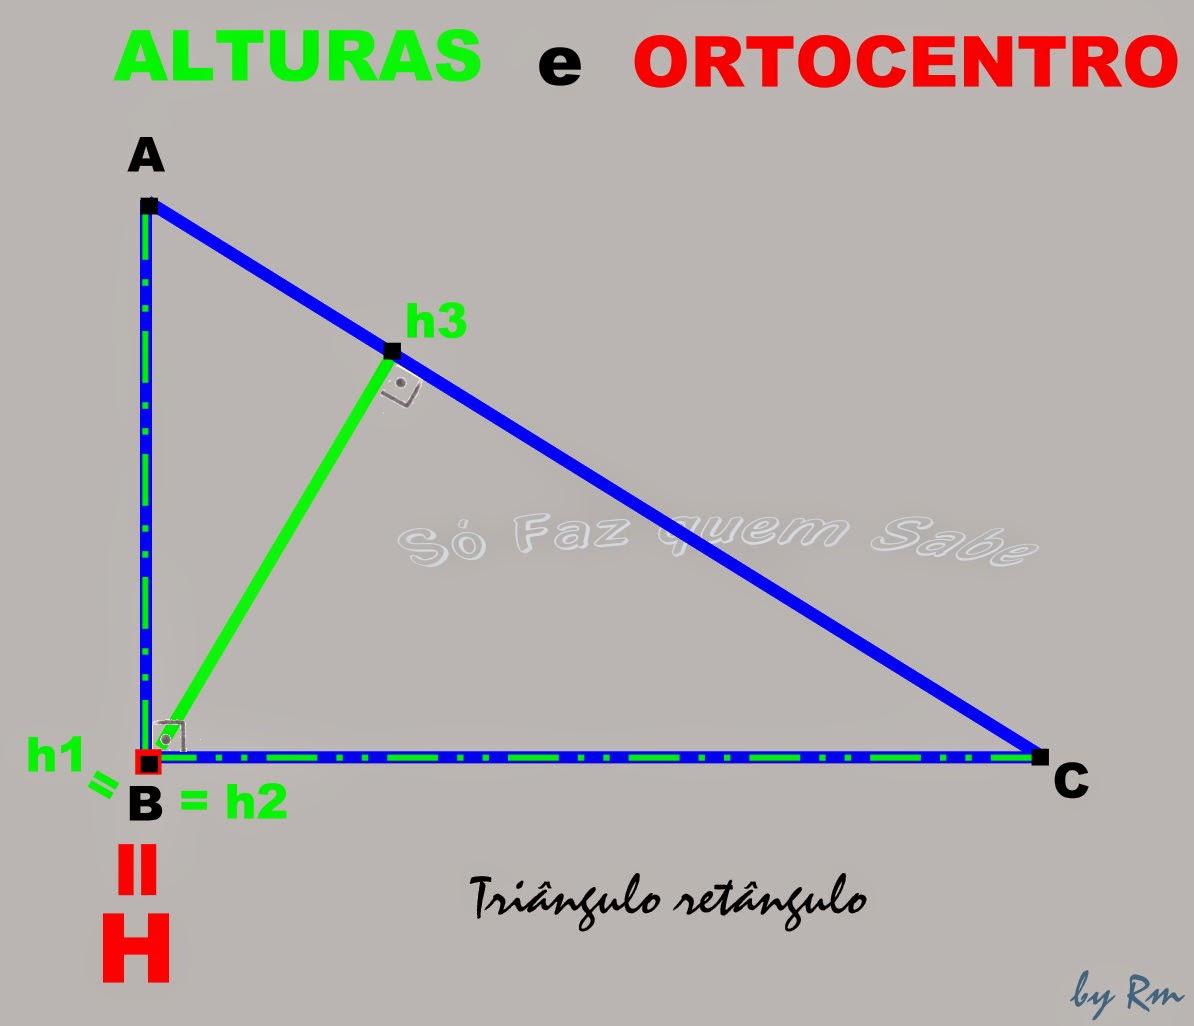 No triângulo retângulo o Ortocentro é o vértice formado pelos dois lados ortogonais.